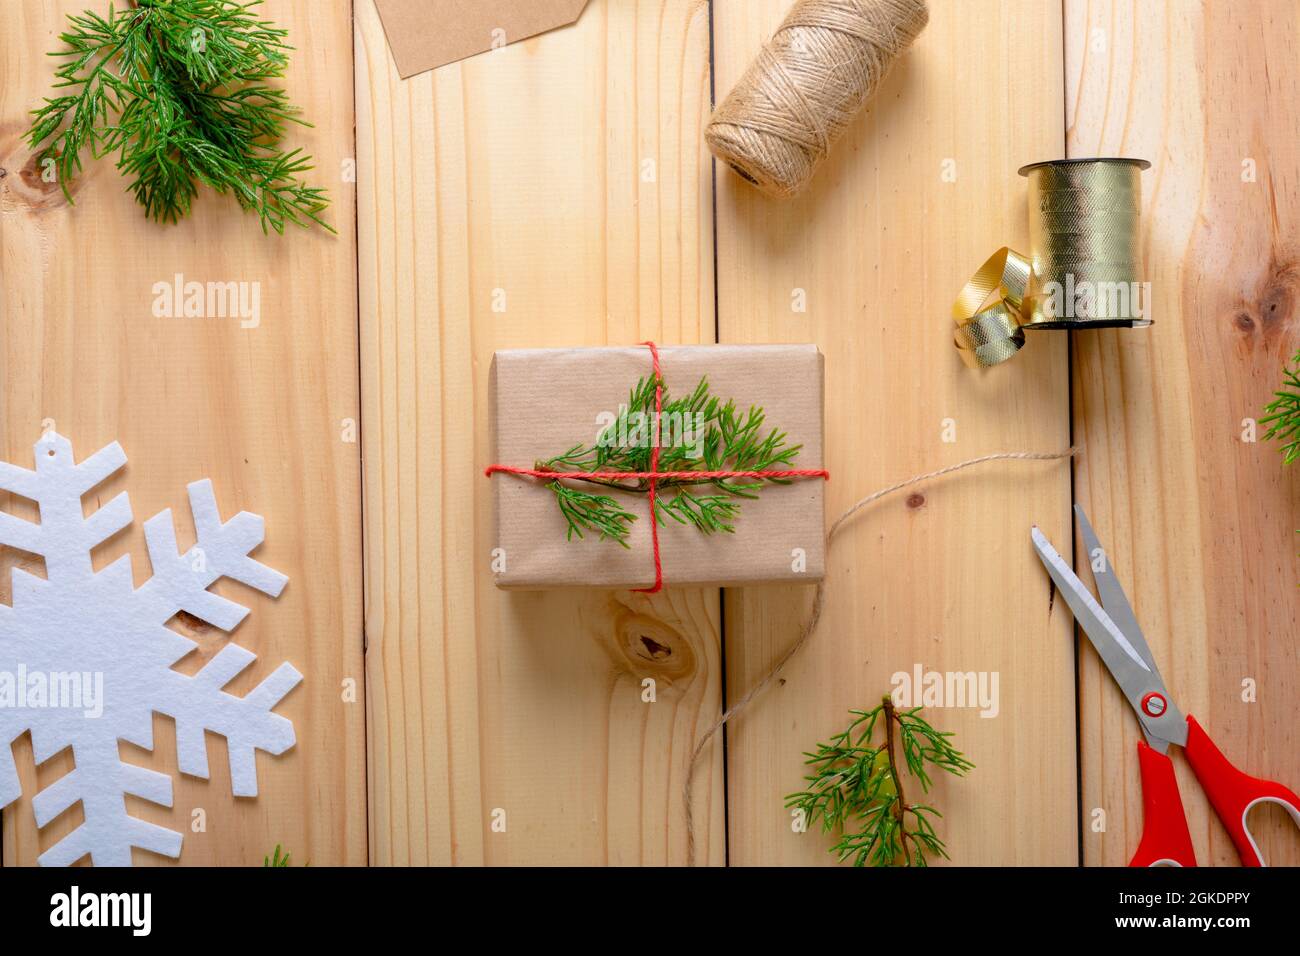 Composizione di decorazioni natalizie con regalo, nastro e forbici su sfondo in legno Foto Stock